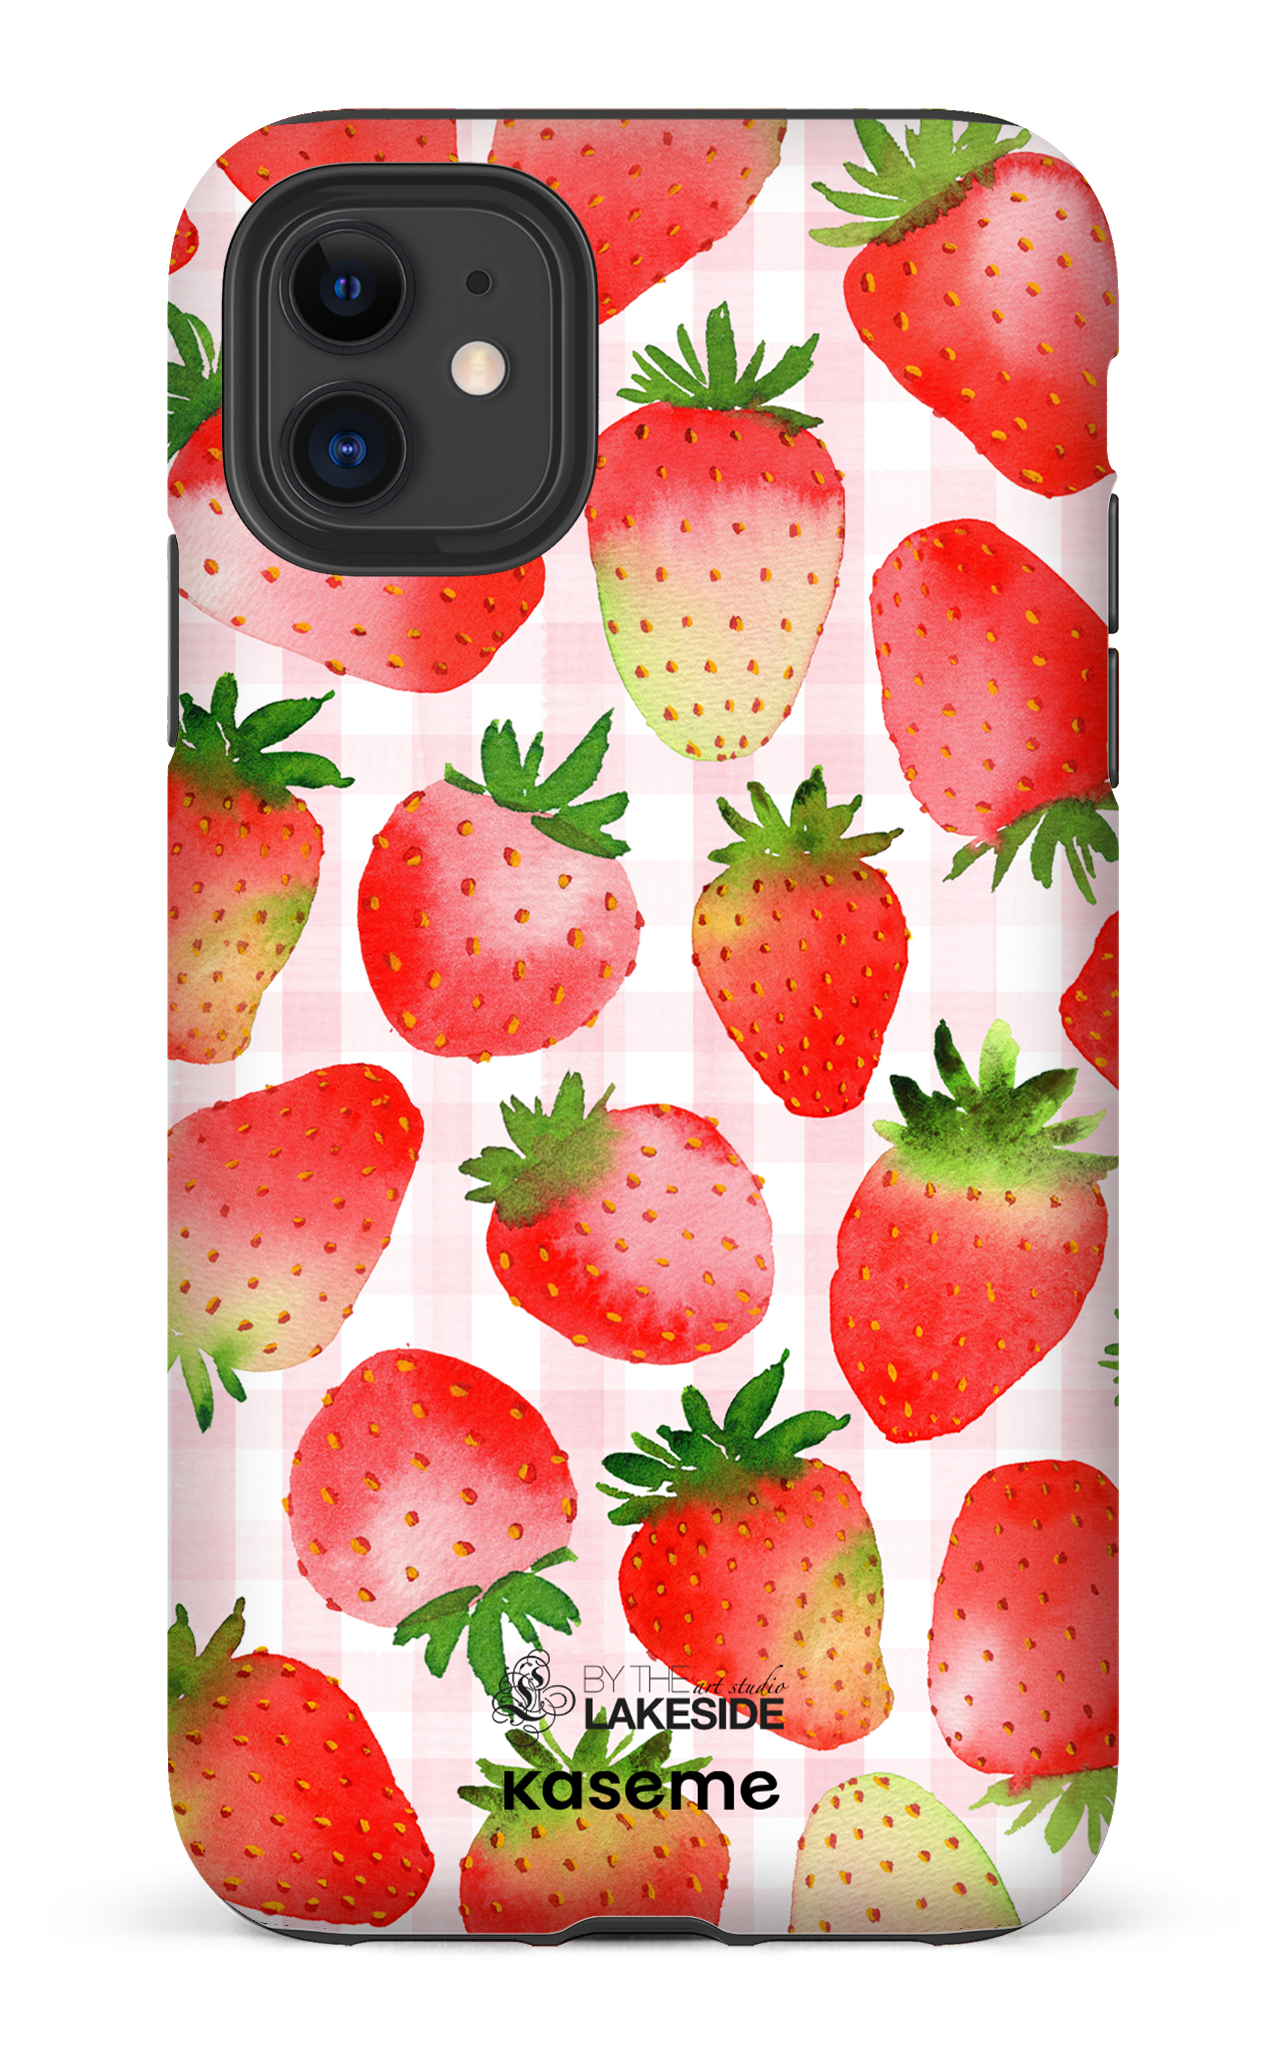 Strawberry Fields by Pooja Umrani - iPhone 11